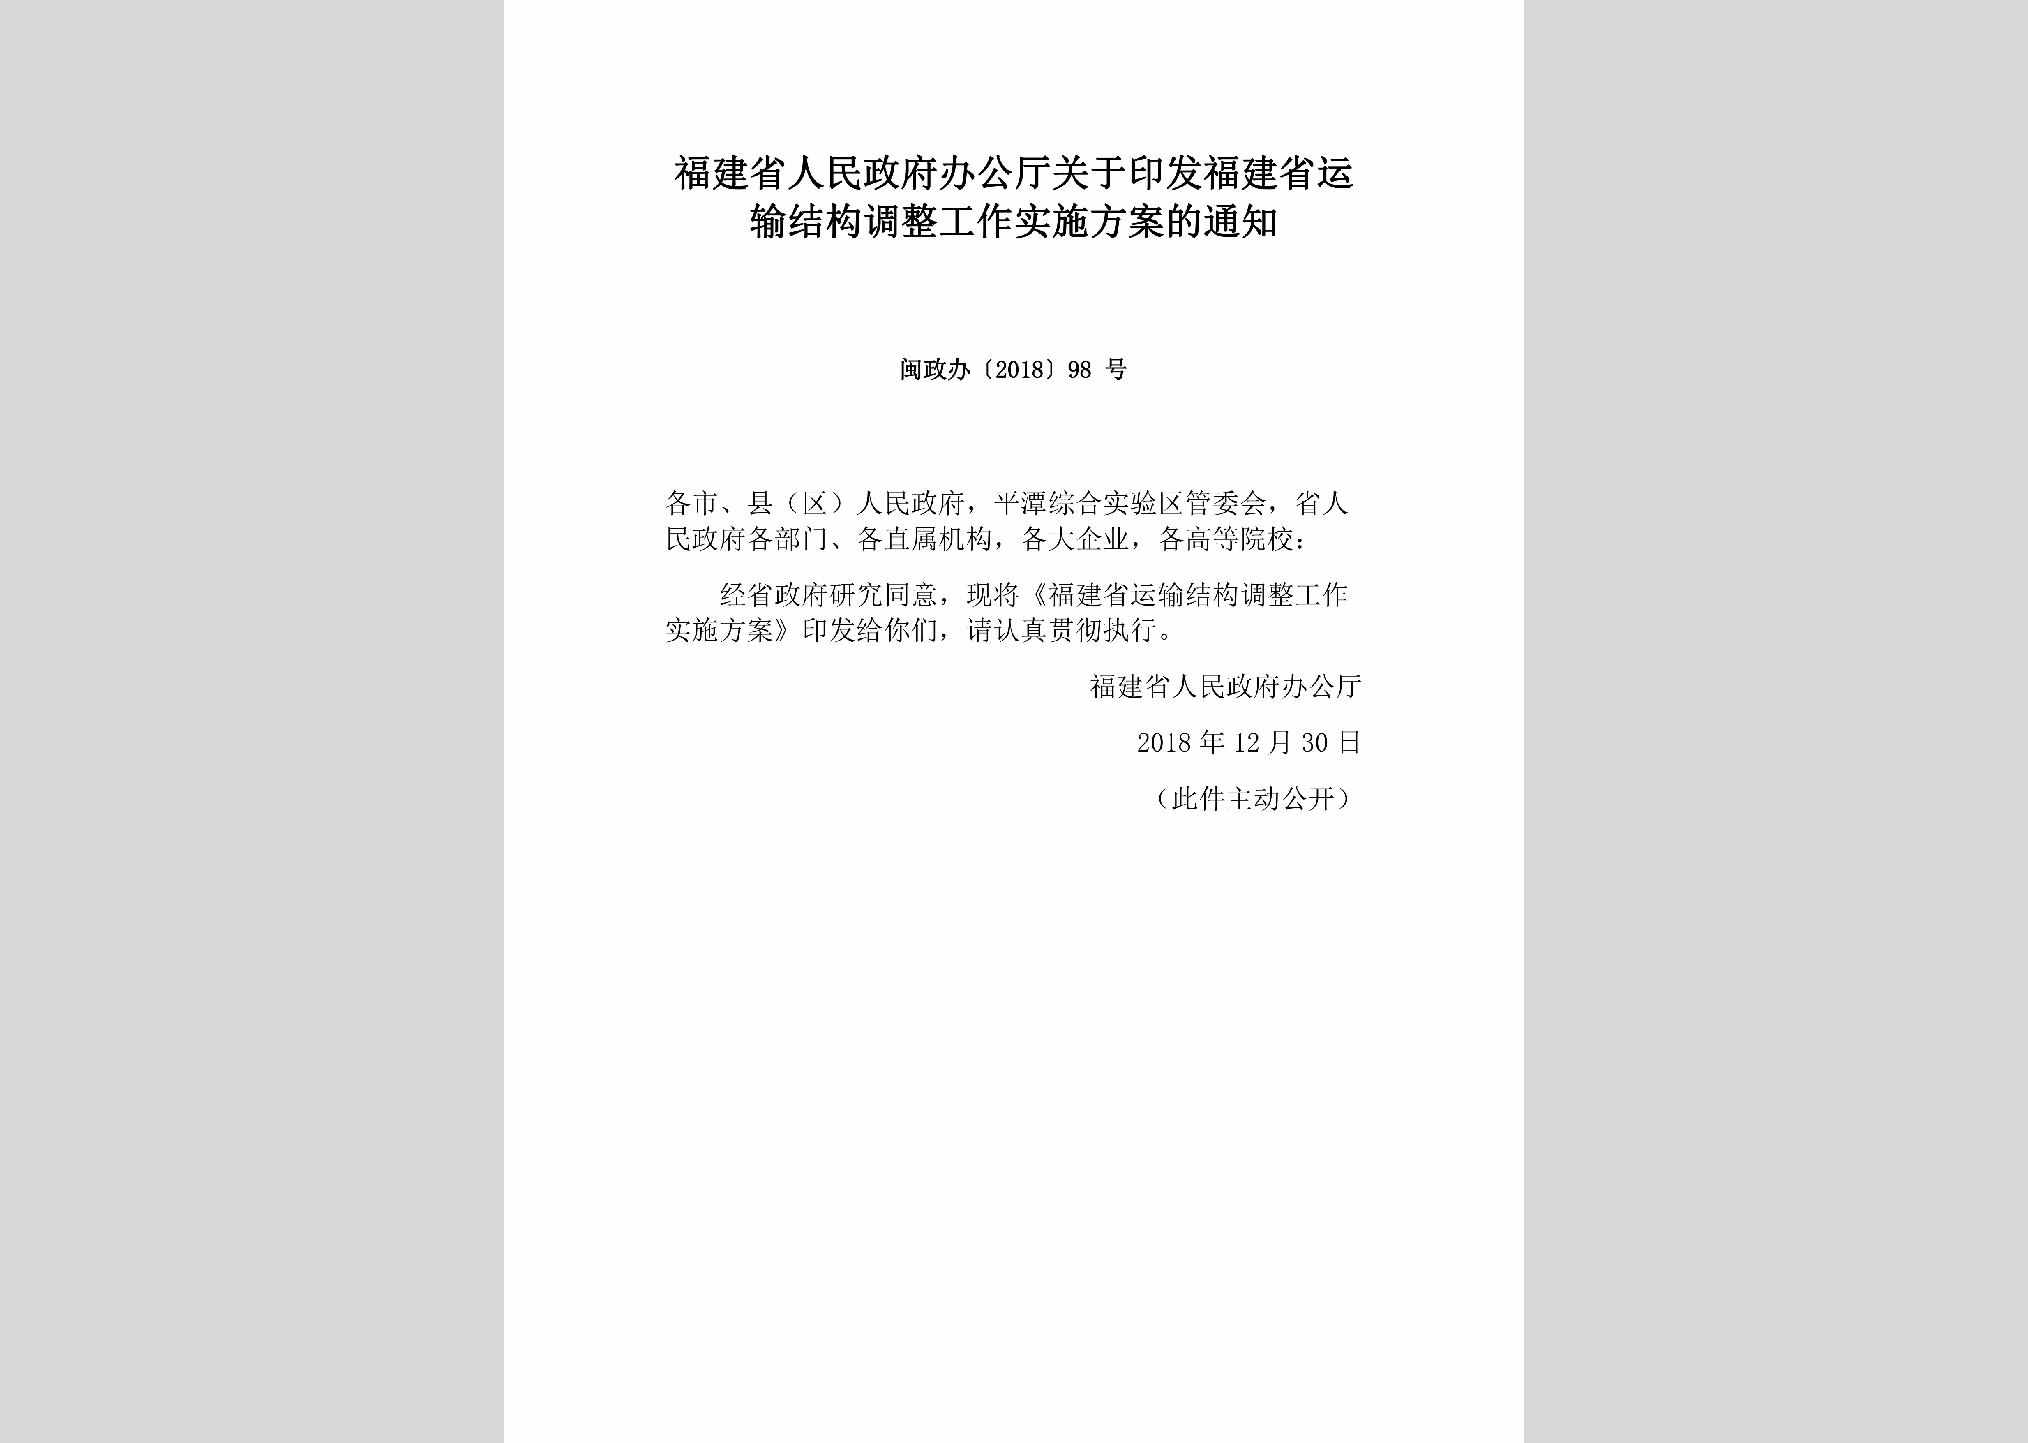 闽政办[2018]98号：福建省人民政府办公厅关于印发福建省运输结构调整工作实施方案的通知